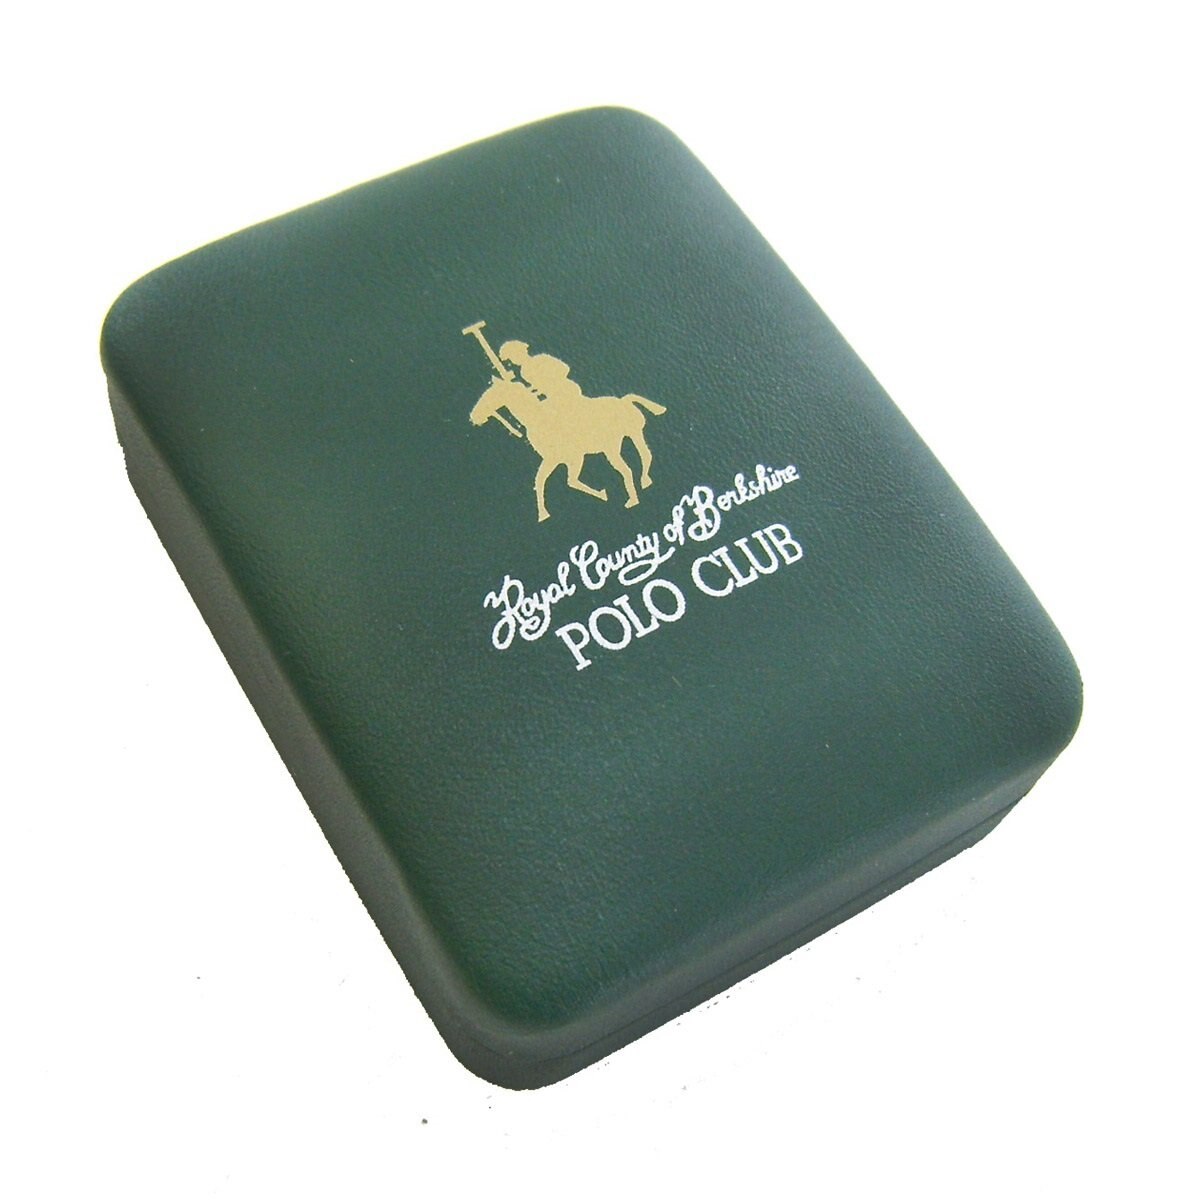 Mancuernas para Hombre Rcb Polo Club